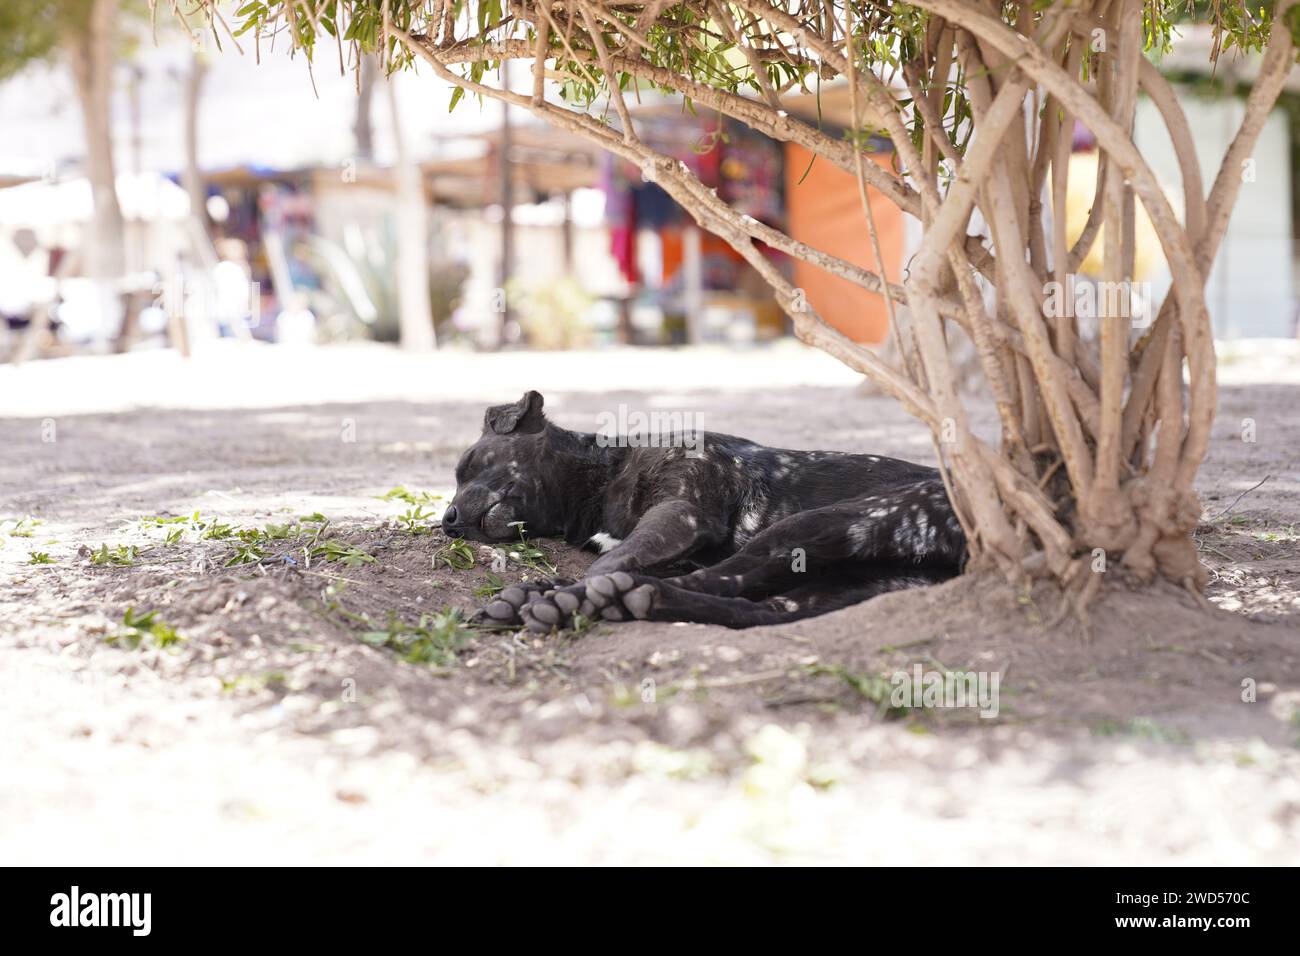 Cane dormiente in una giornata calda. Foto Stock